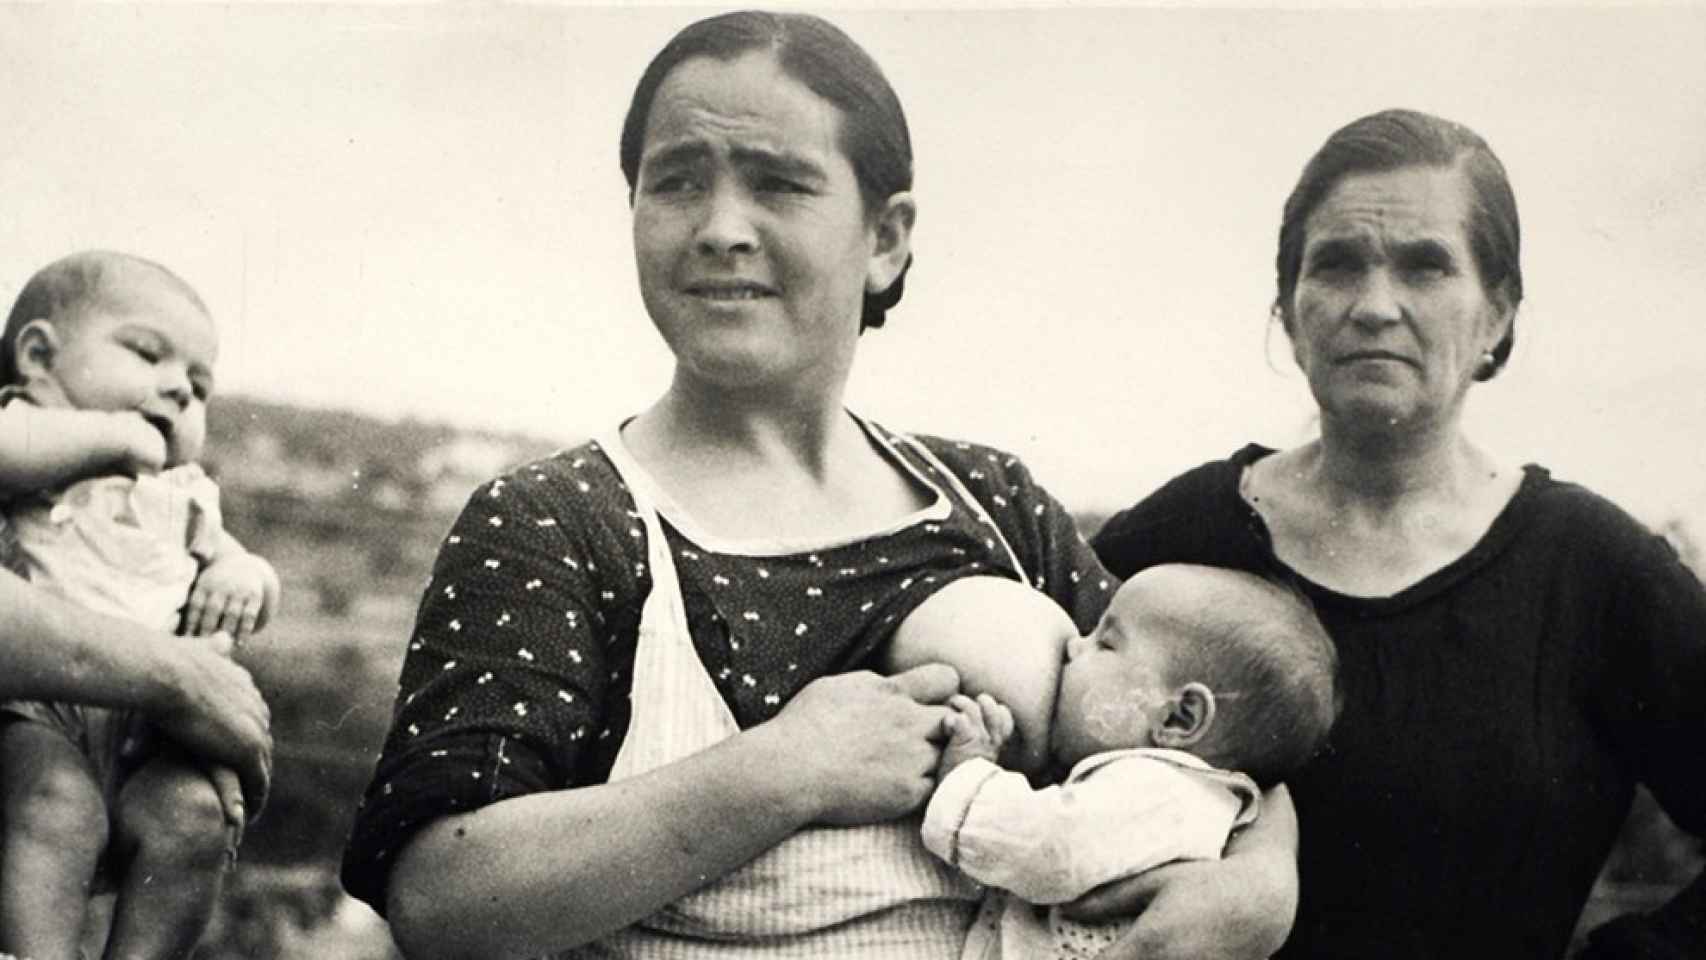 Un nacimiento de un bebé, allá por 1937